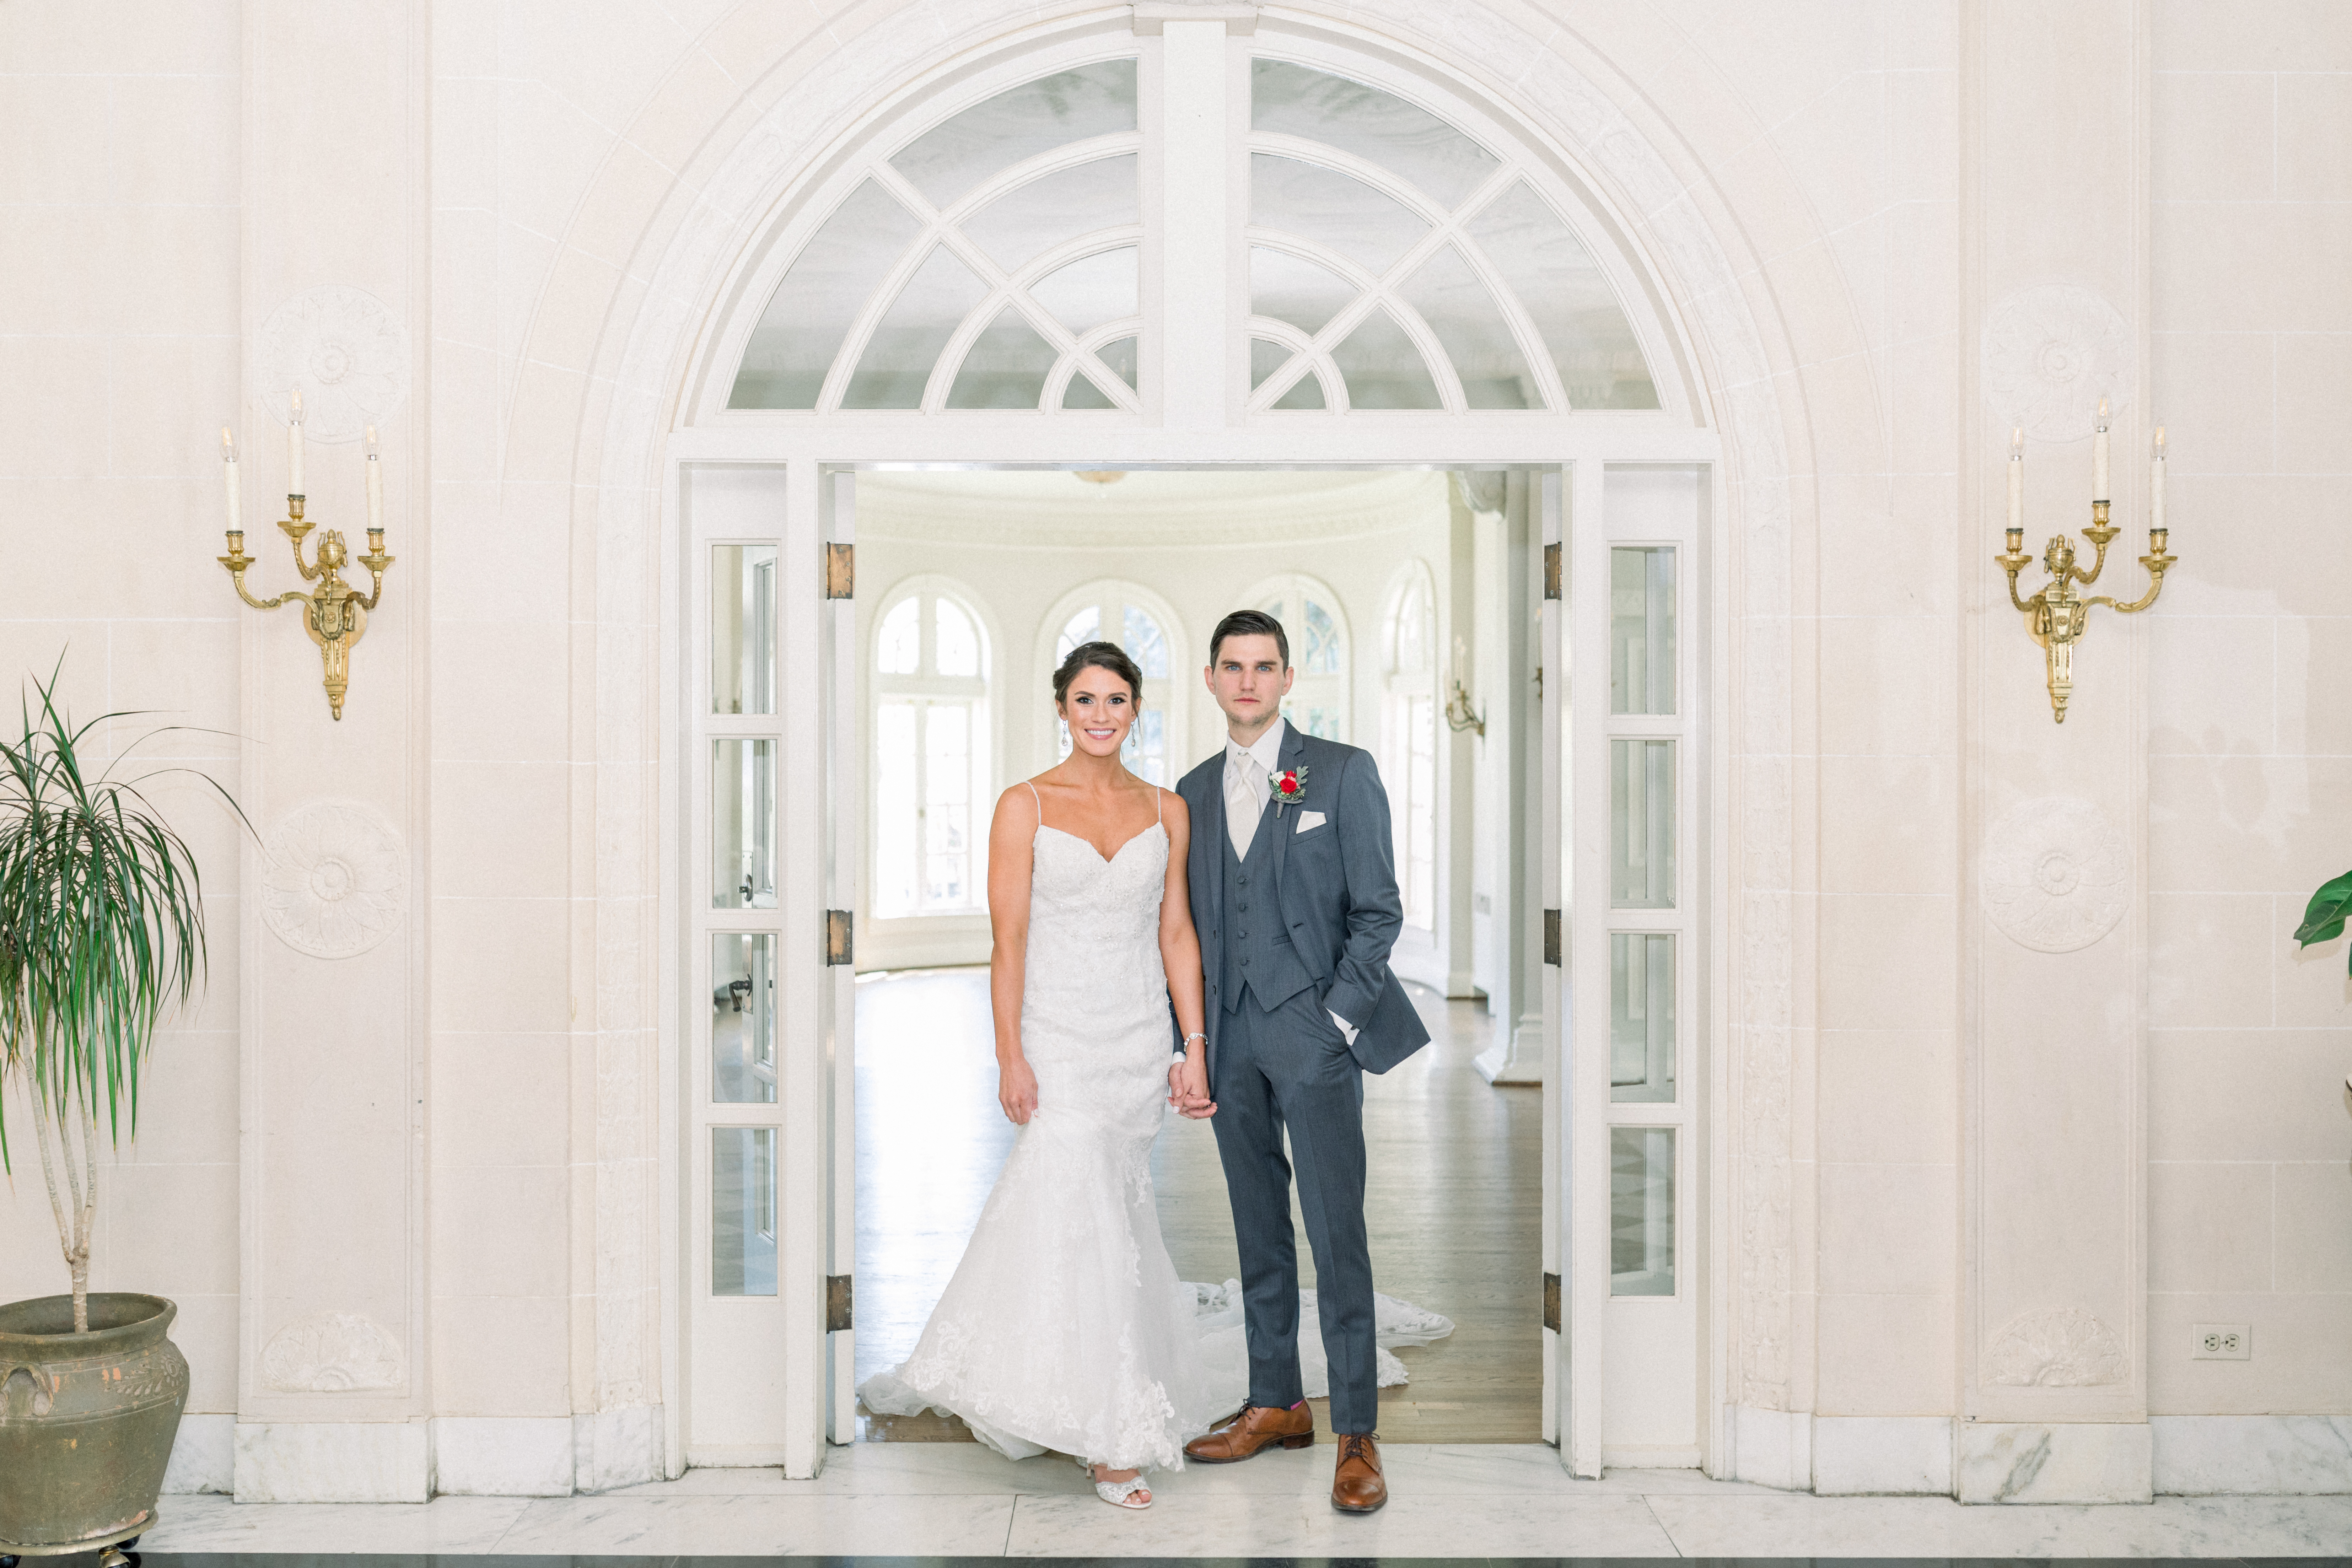 Bride and groom standing in front of doorway